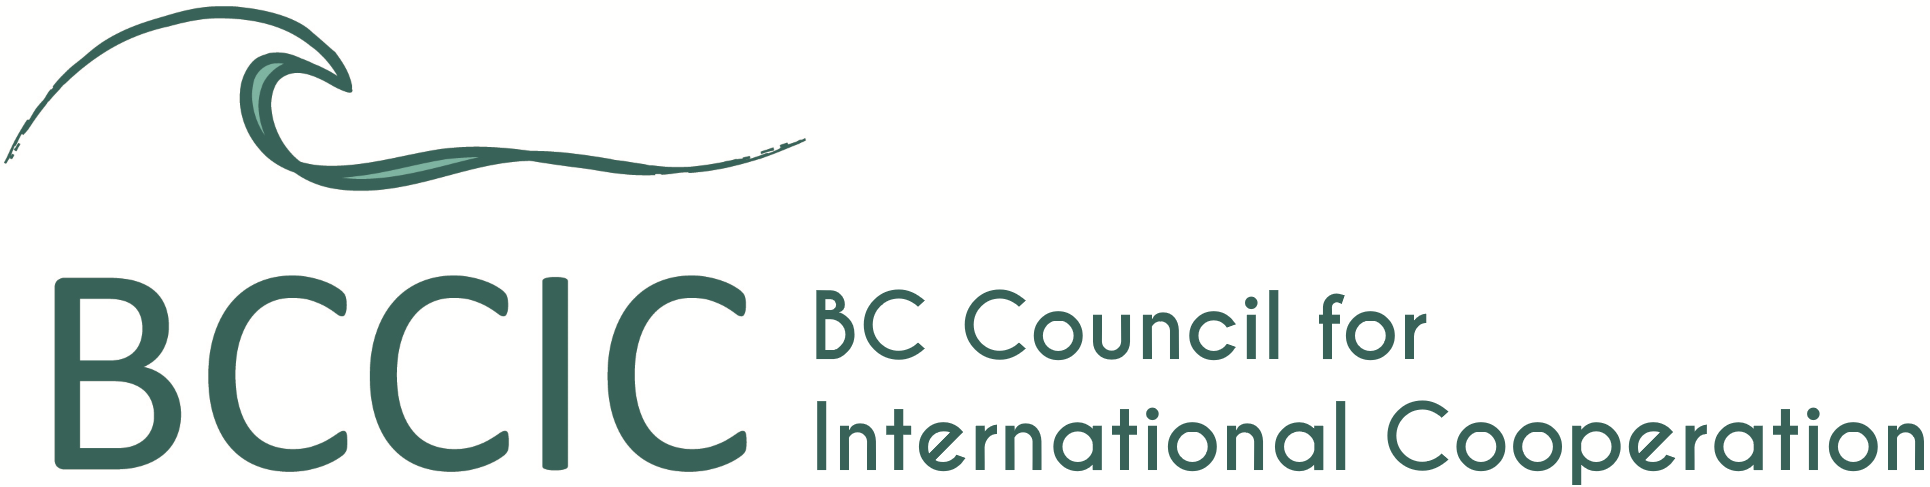 BCCIC logo-1.png